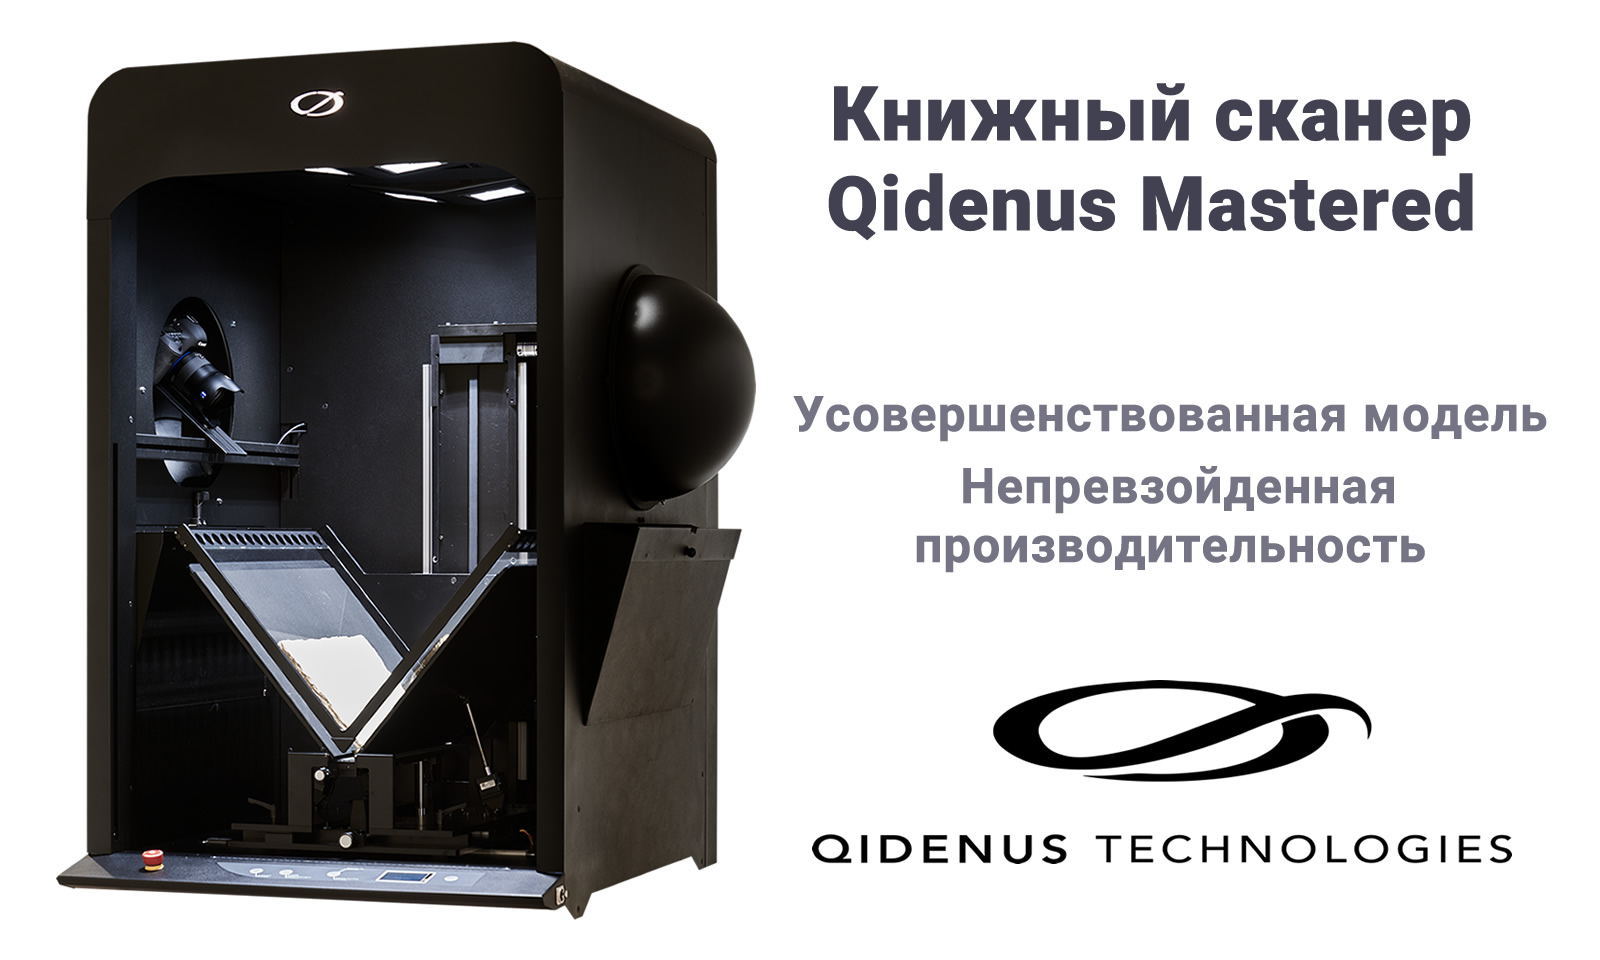 iGuana - Книжный сканер Qidenus Mastered (сверхскоростной, непревзойденная производительность)